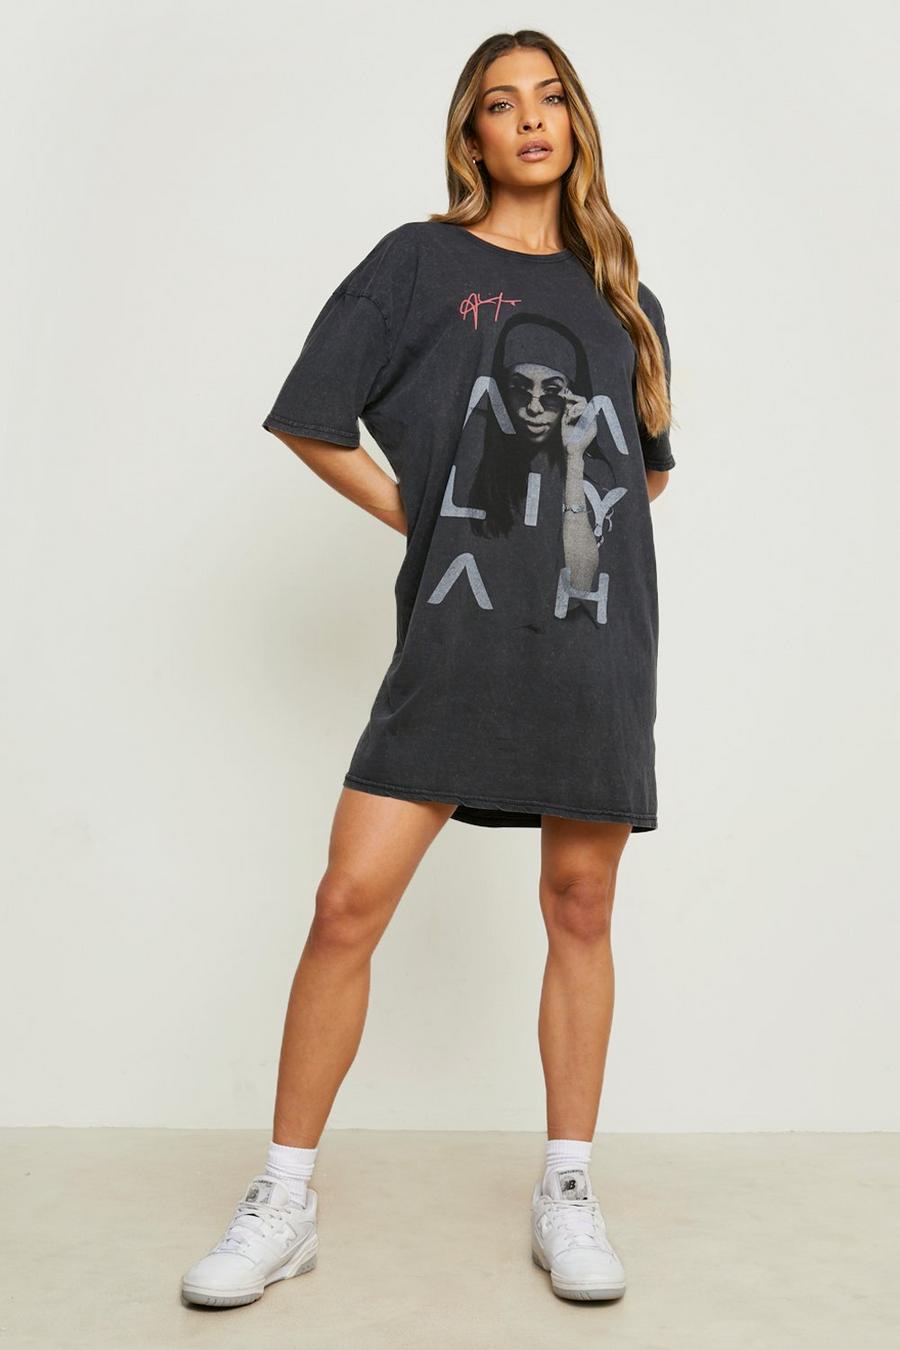 Charcoal grey Aaliyah License Print T-shirt Dress